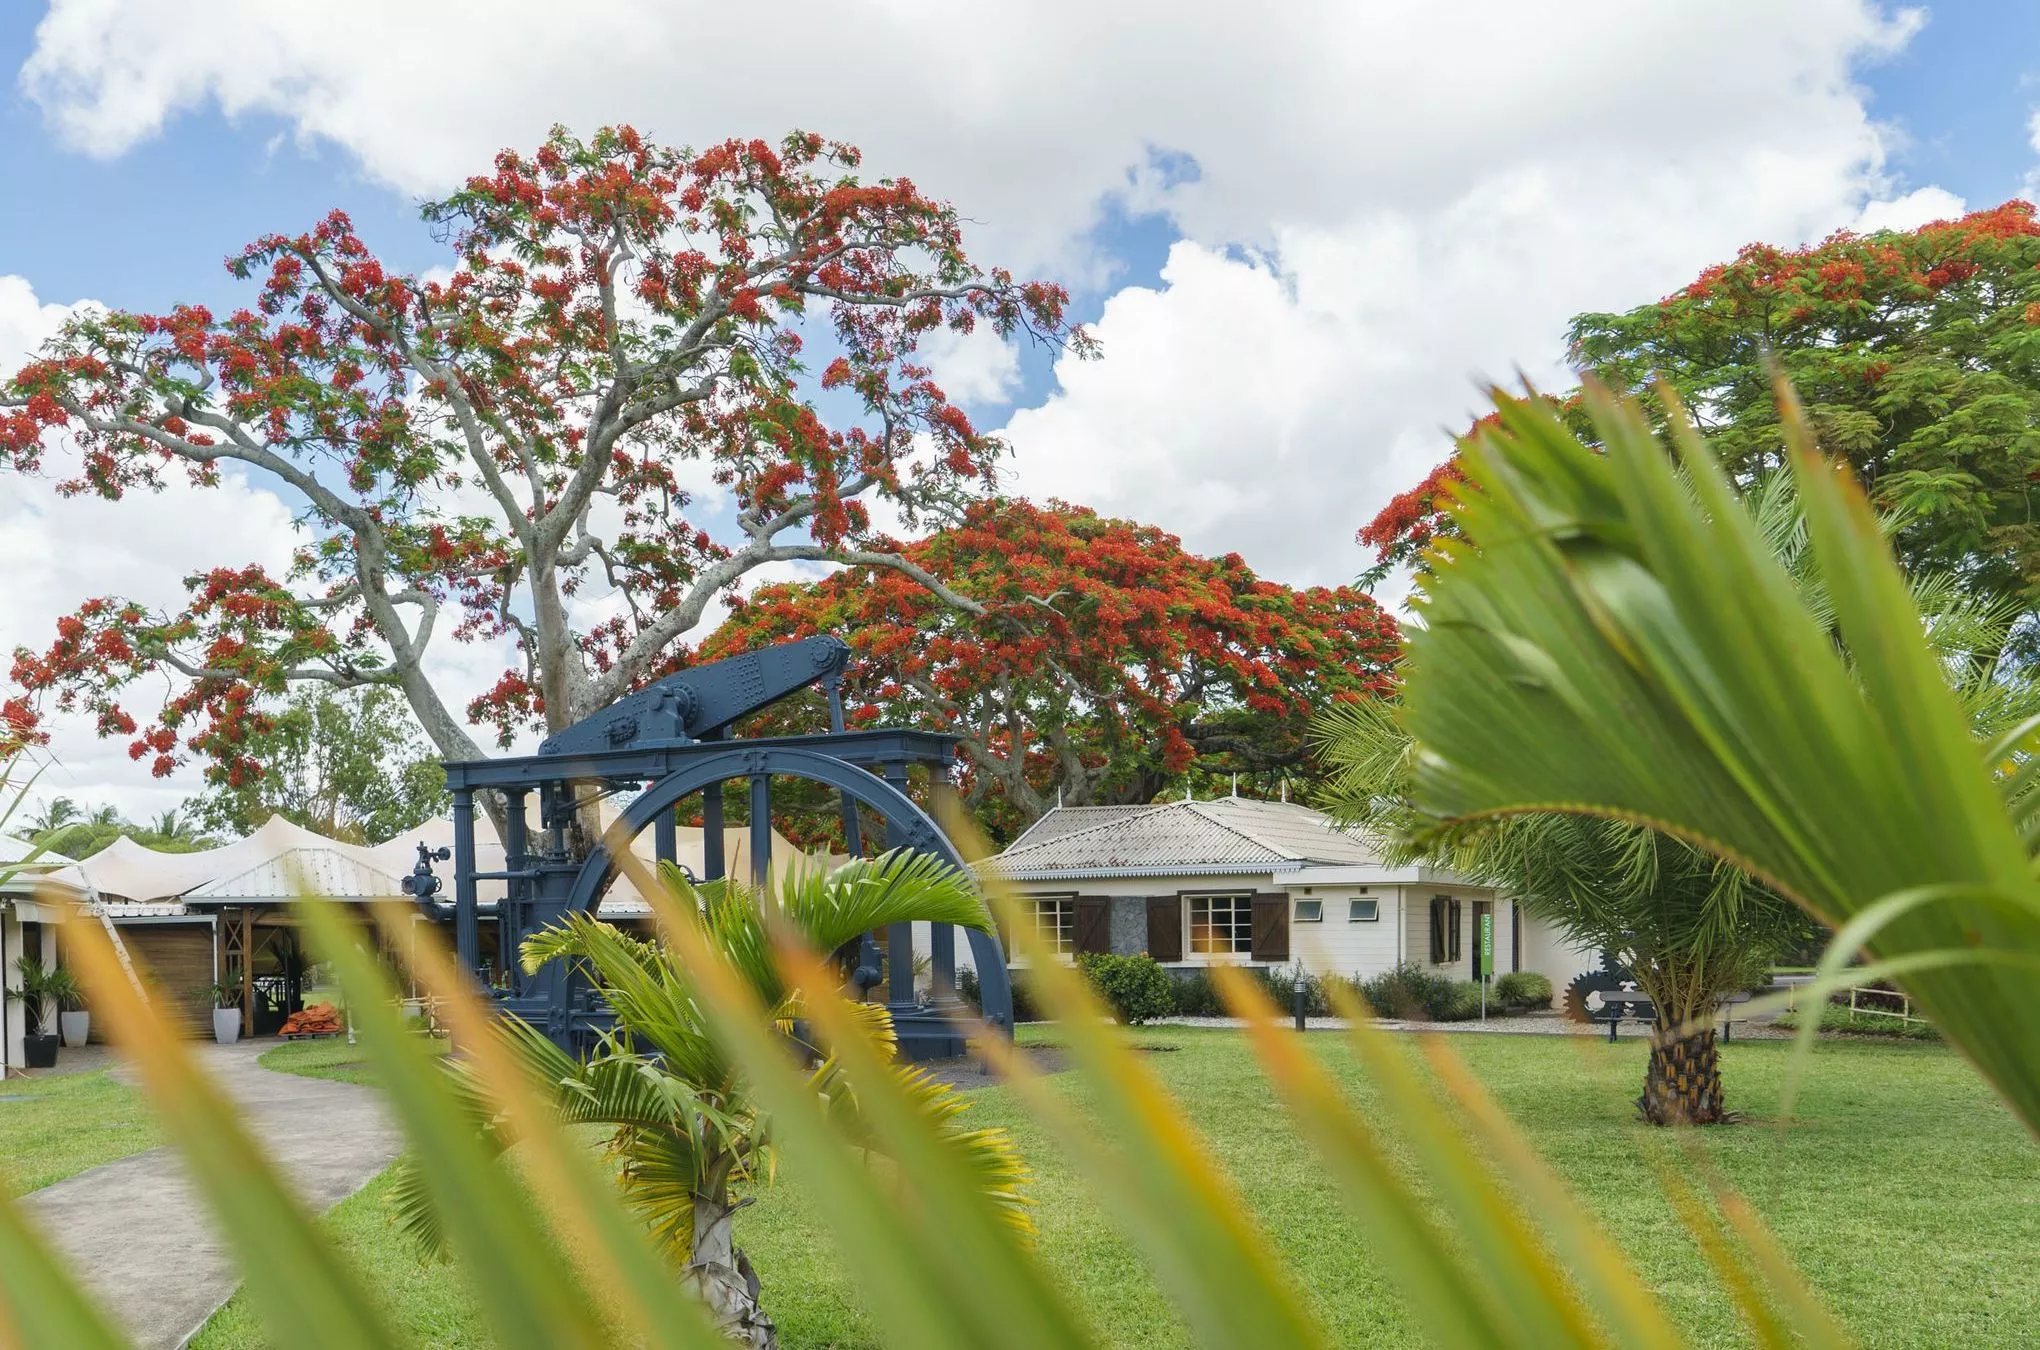 Die Zuckerherstellung begründete den Aufschwung Mauritius’. Wie das funktionierte, sehen Besucher im „Aventure du Sucre“ in Pamplemousses